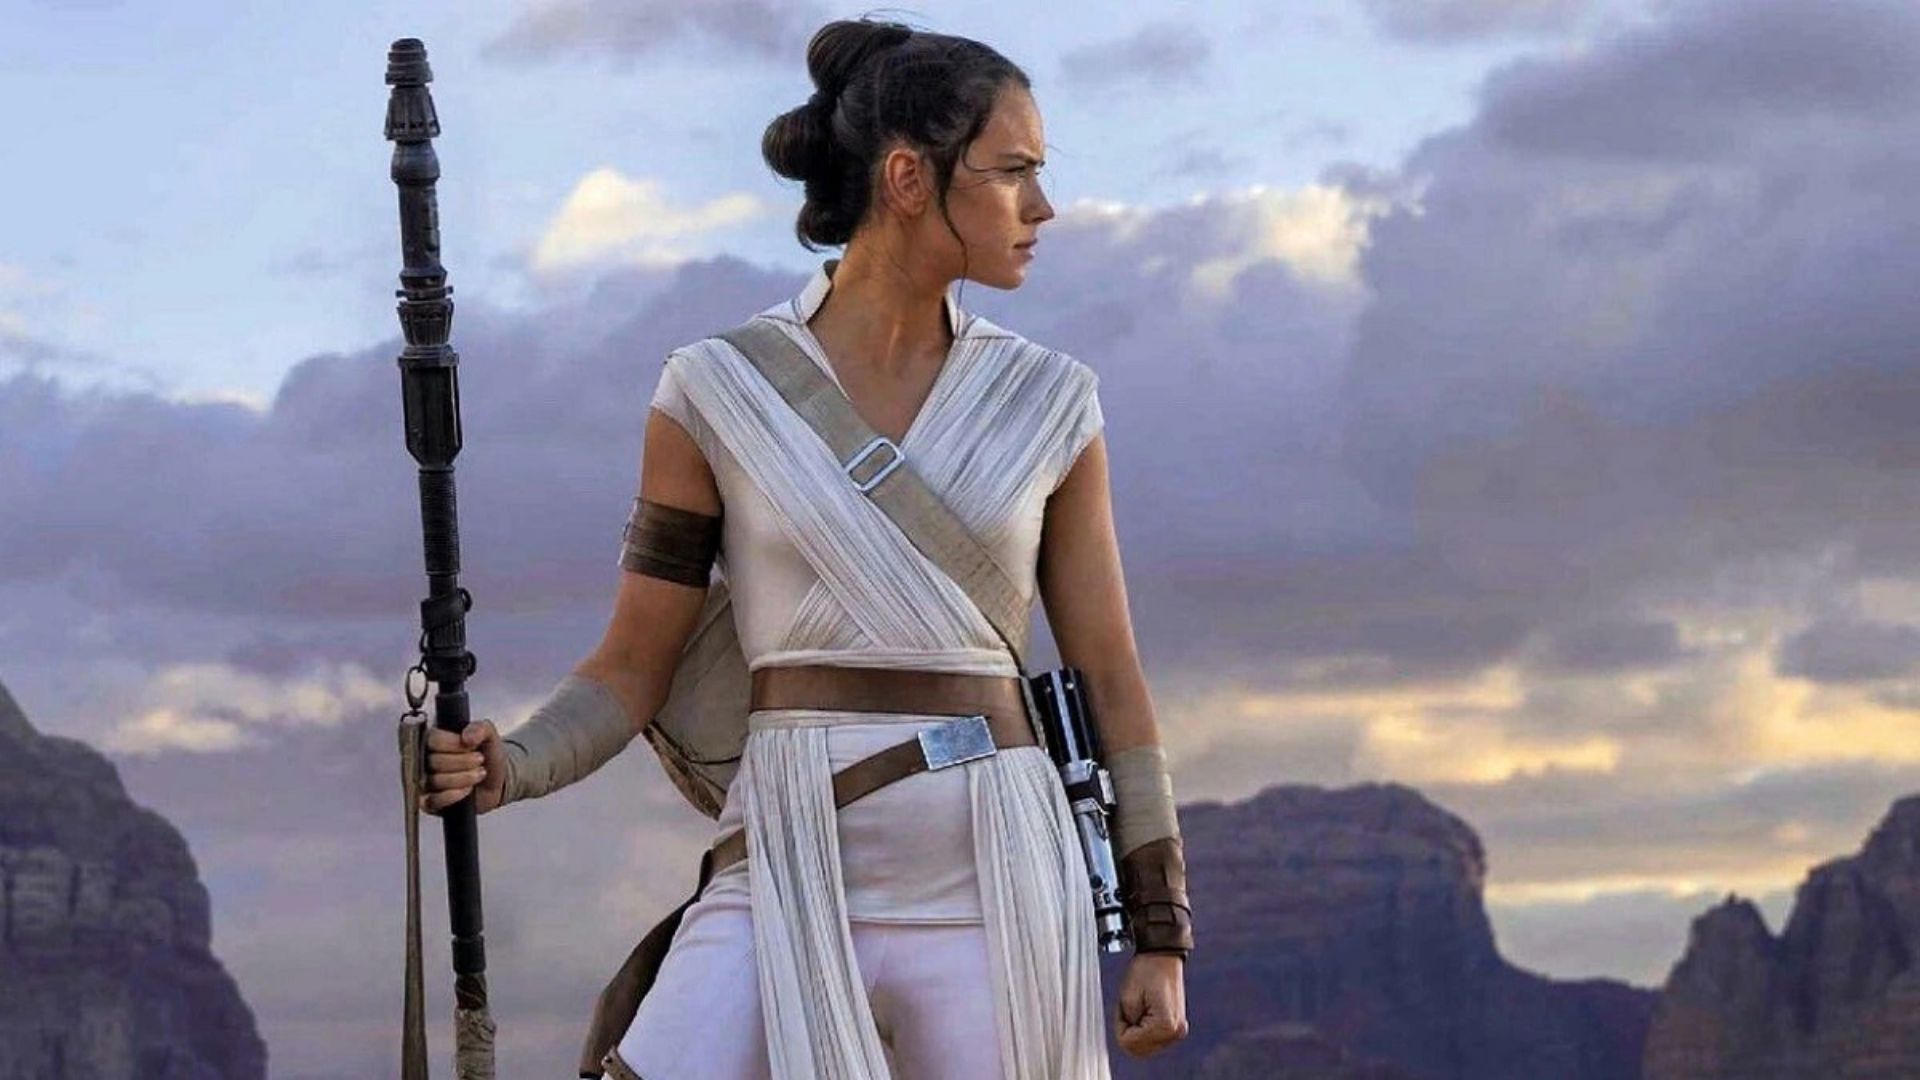 Star Wars: Filme de Rey será primeiro a abandonar saga original de